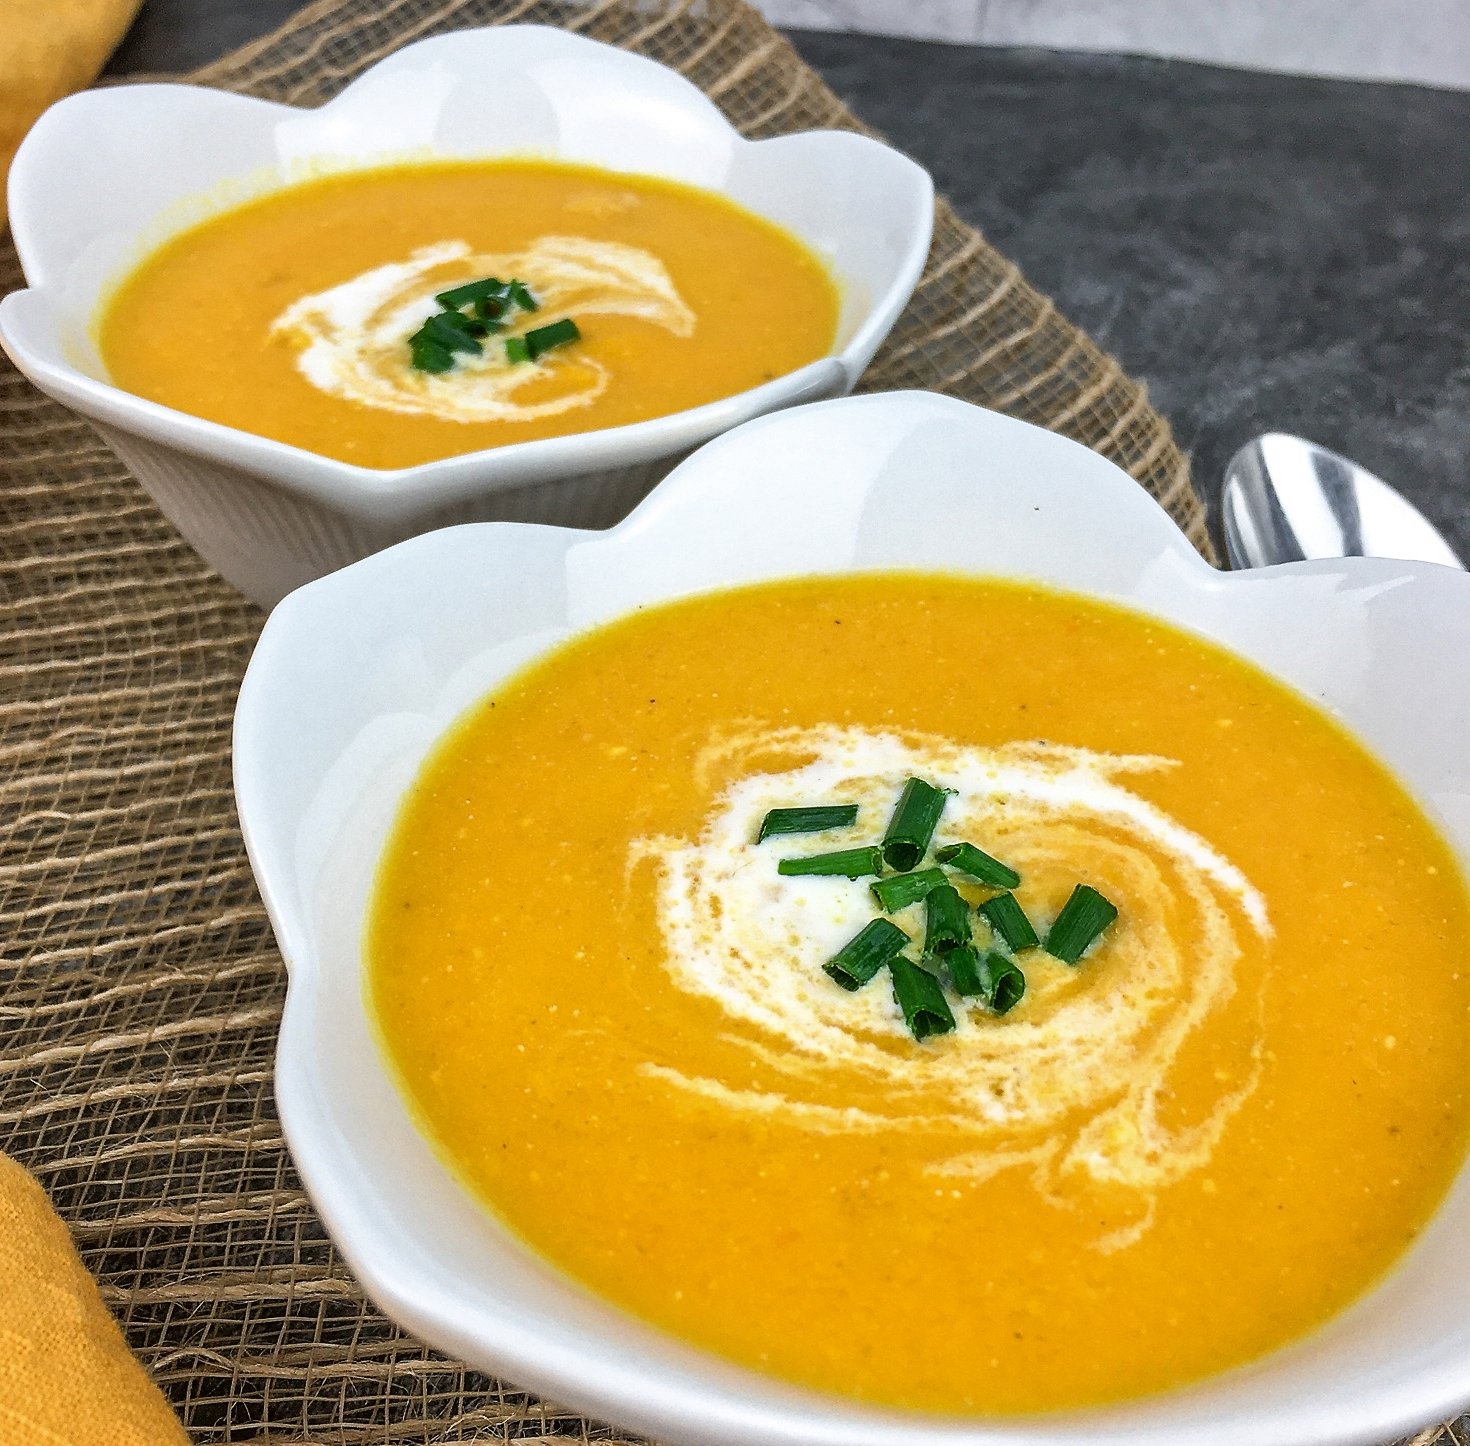 Delicious and creamy Golden Gazpacho Soup